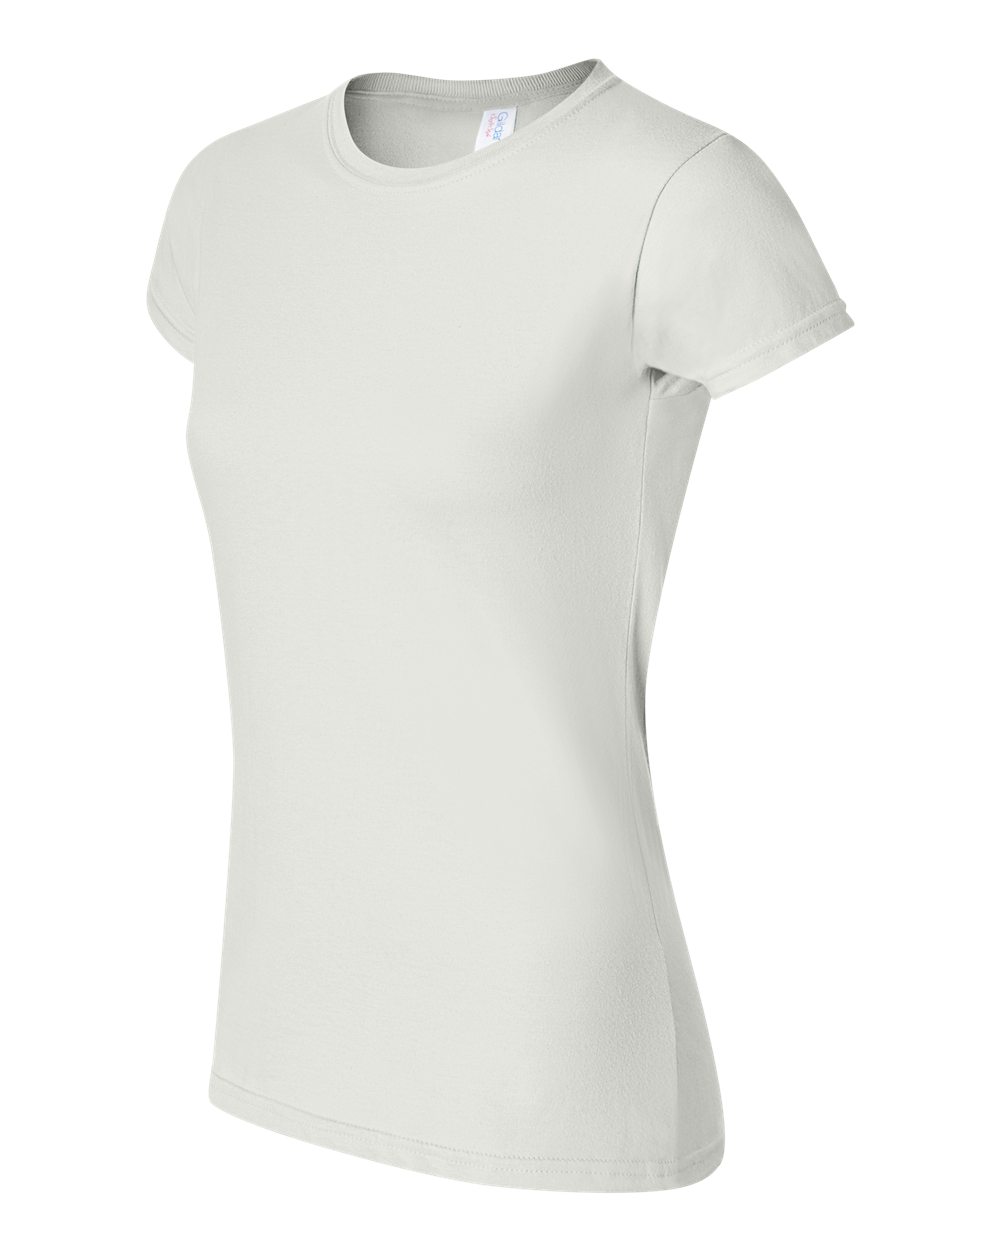 Softstyle® Women's T-Shirt - Gildan 64000L